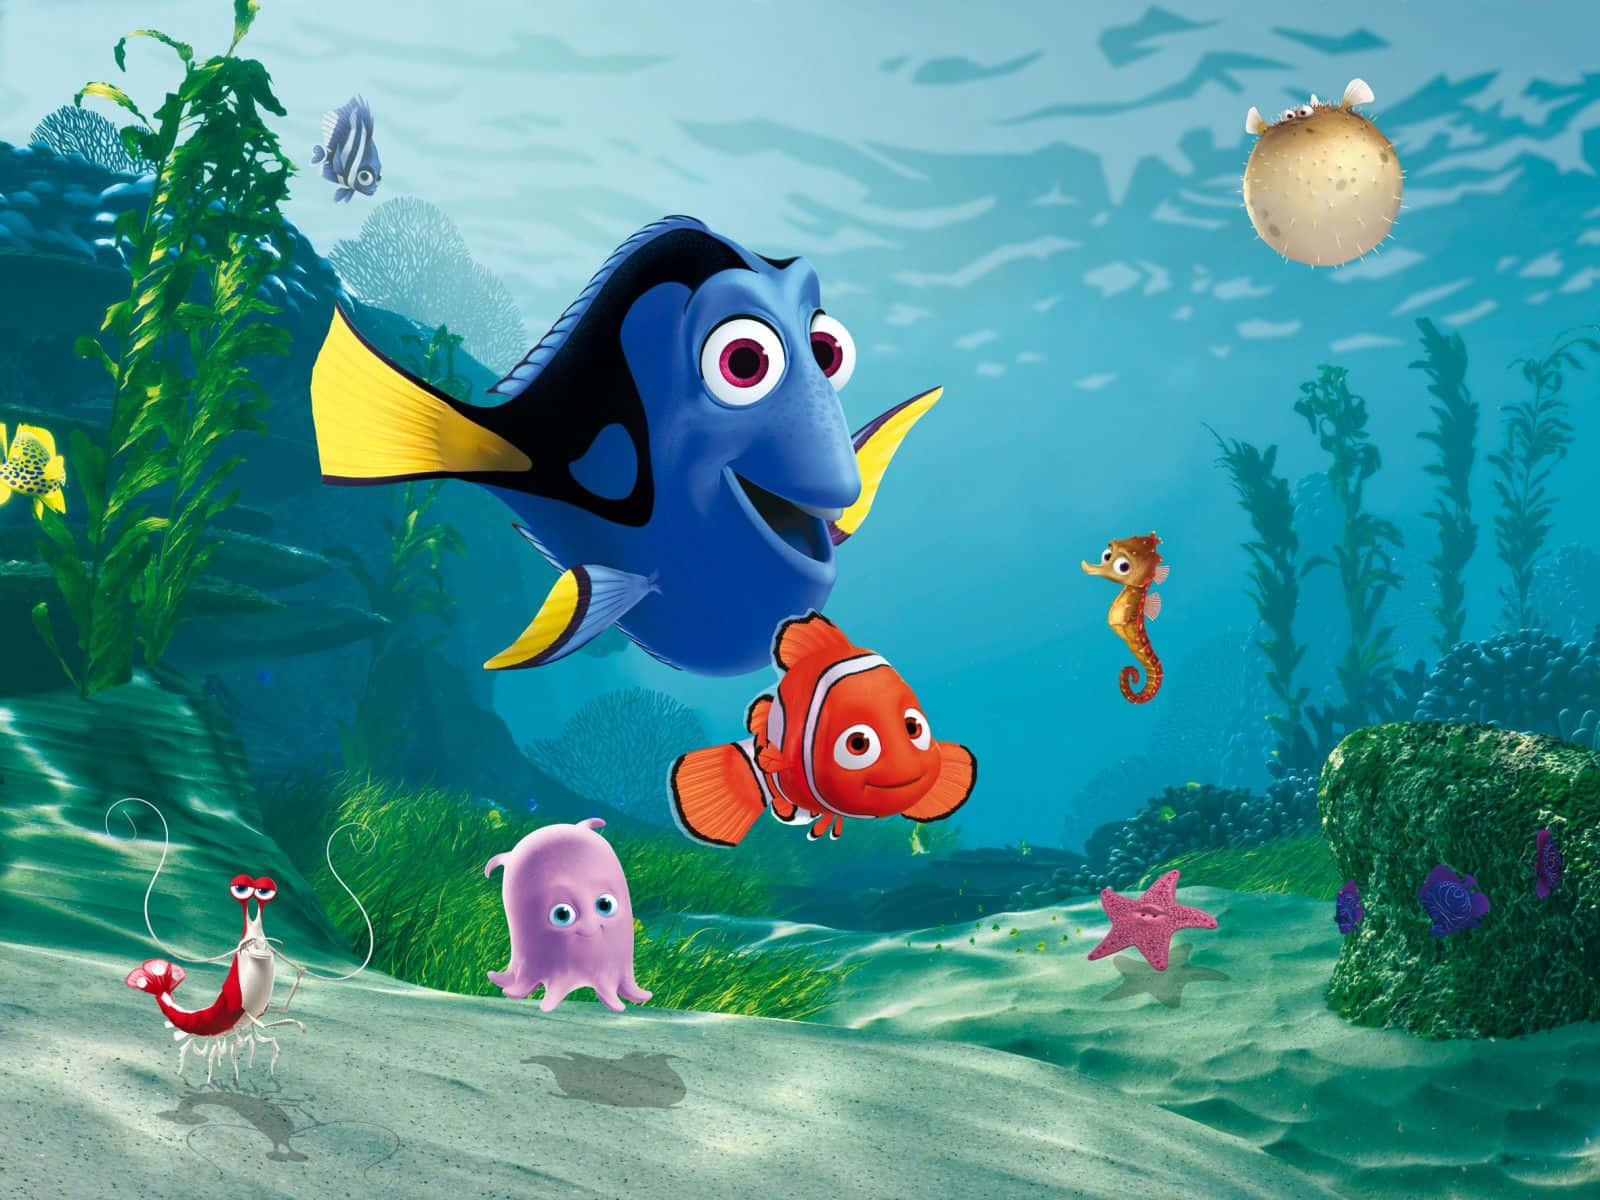 Finding Nemo underwater adventure